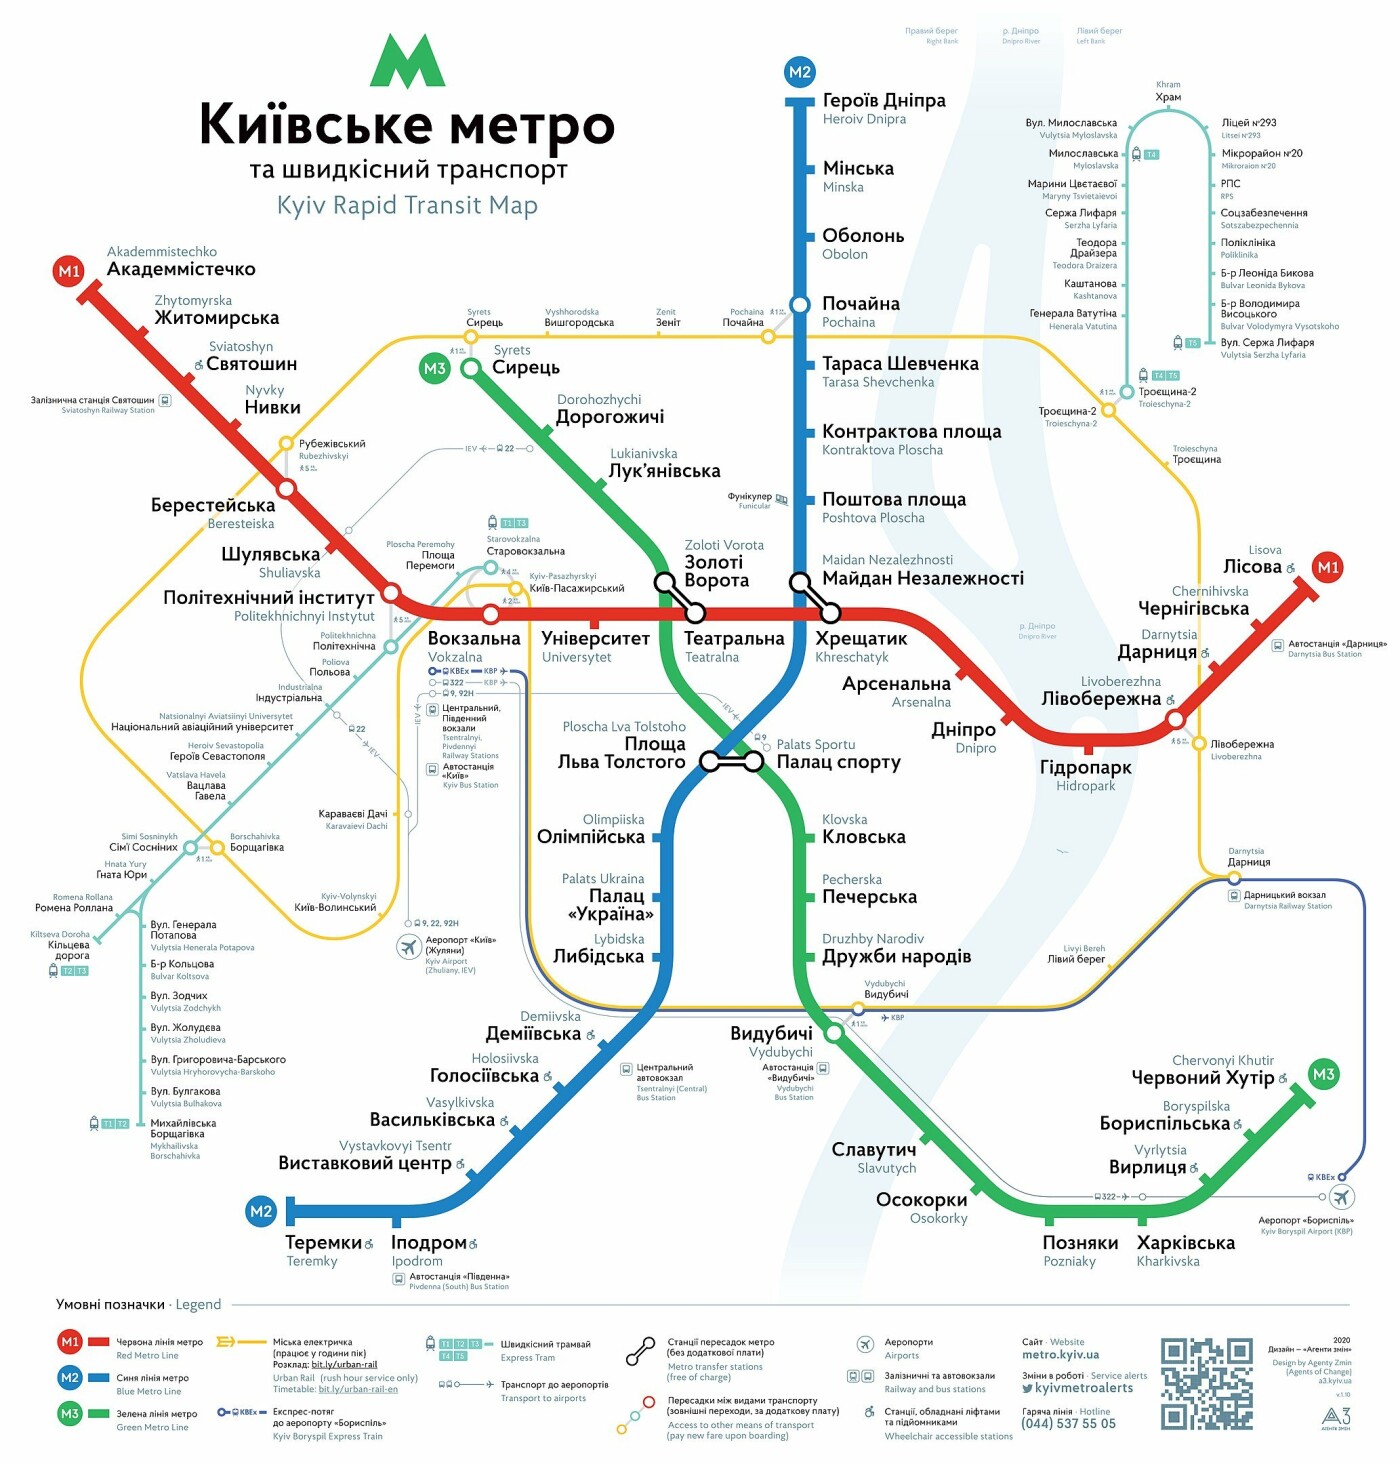 Как приезжему ориентироваться в транспорте Киева и экономить на поездках, Фото: Википедия